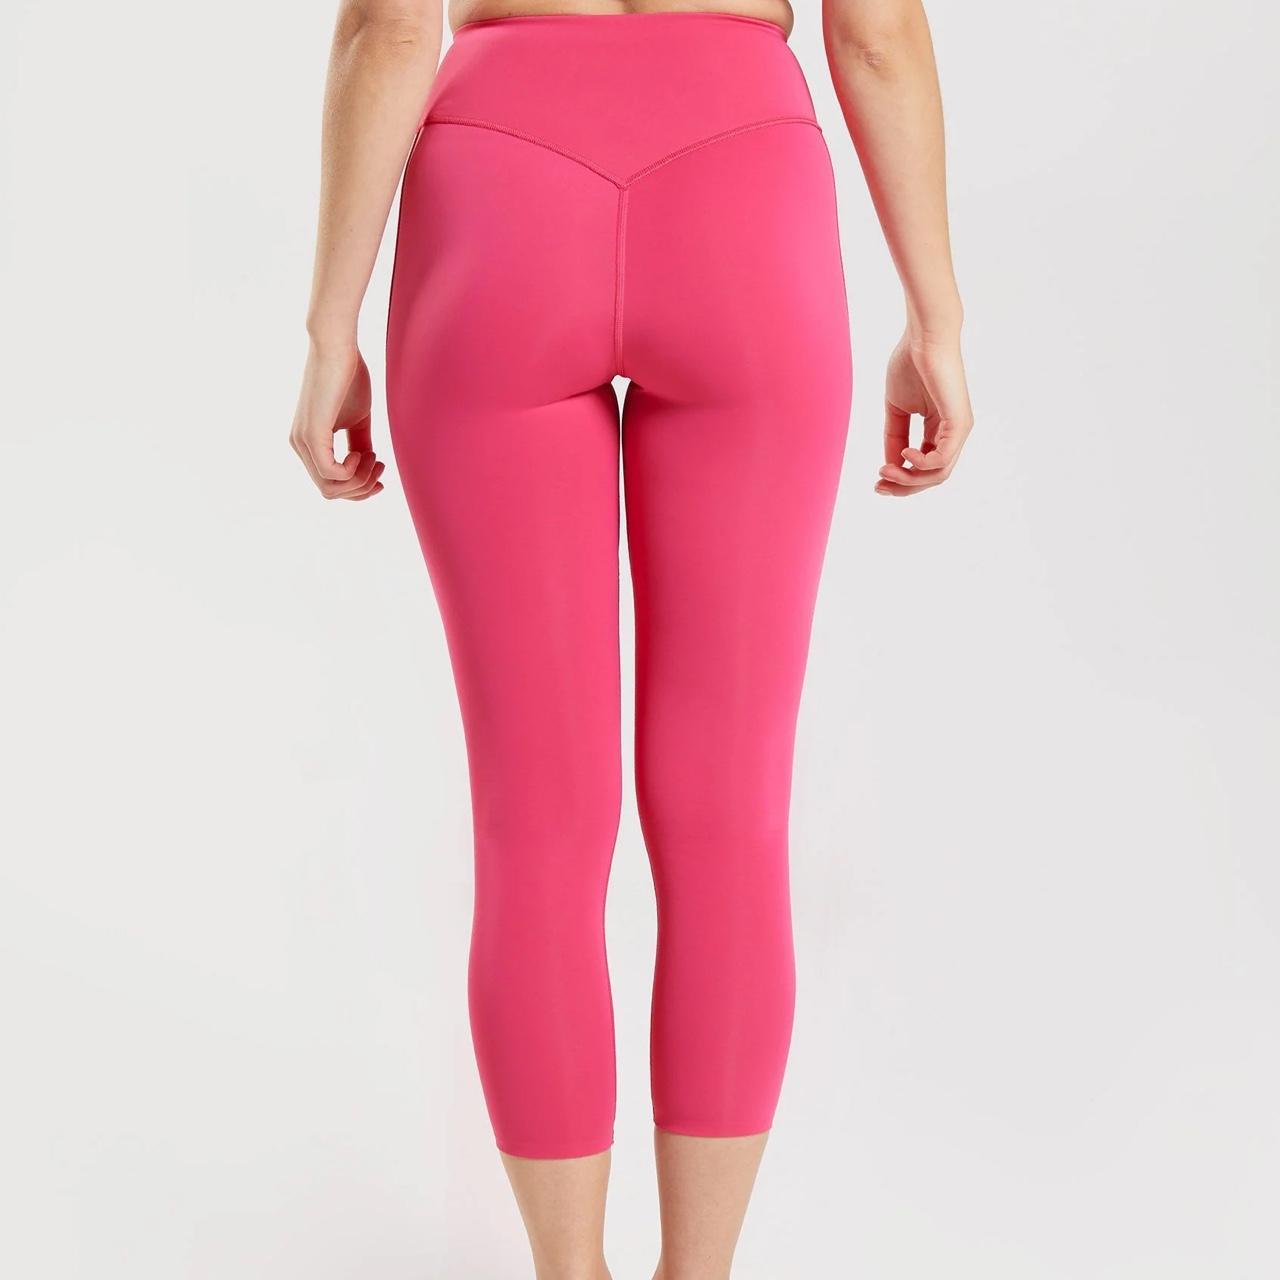 Lululemon hot pink align leggings